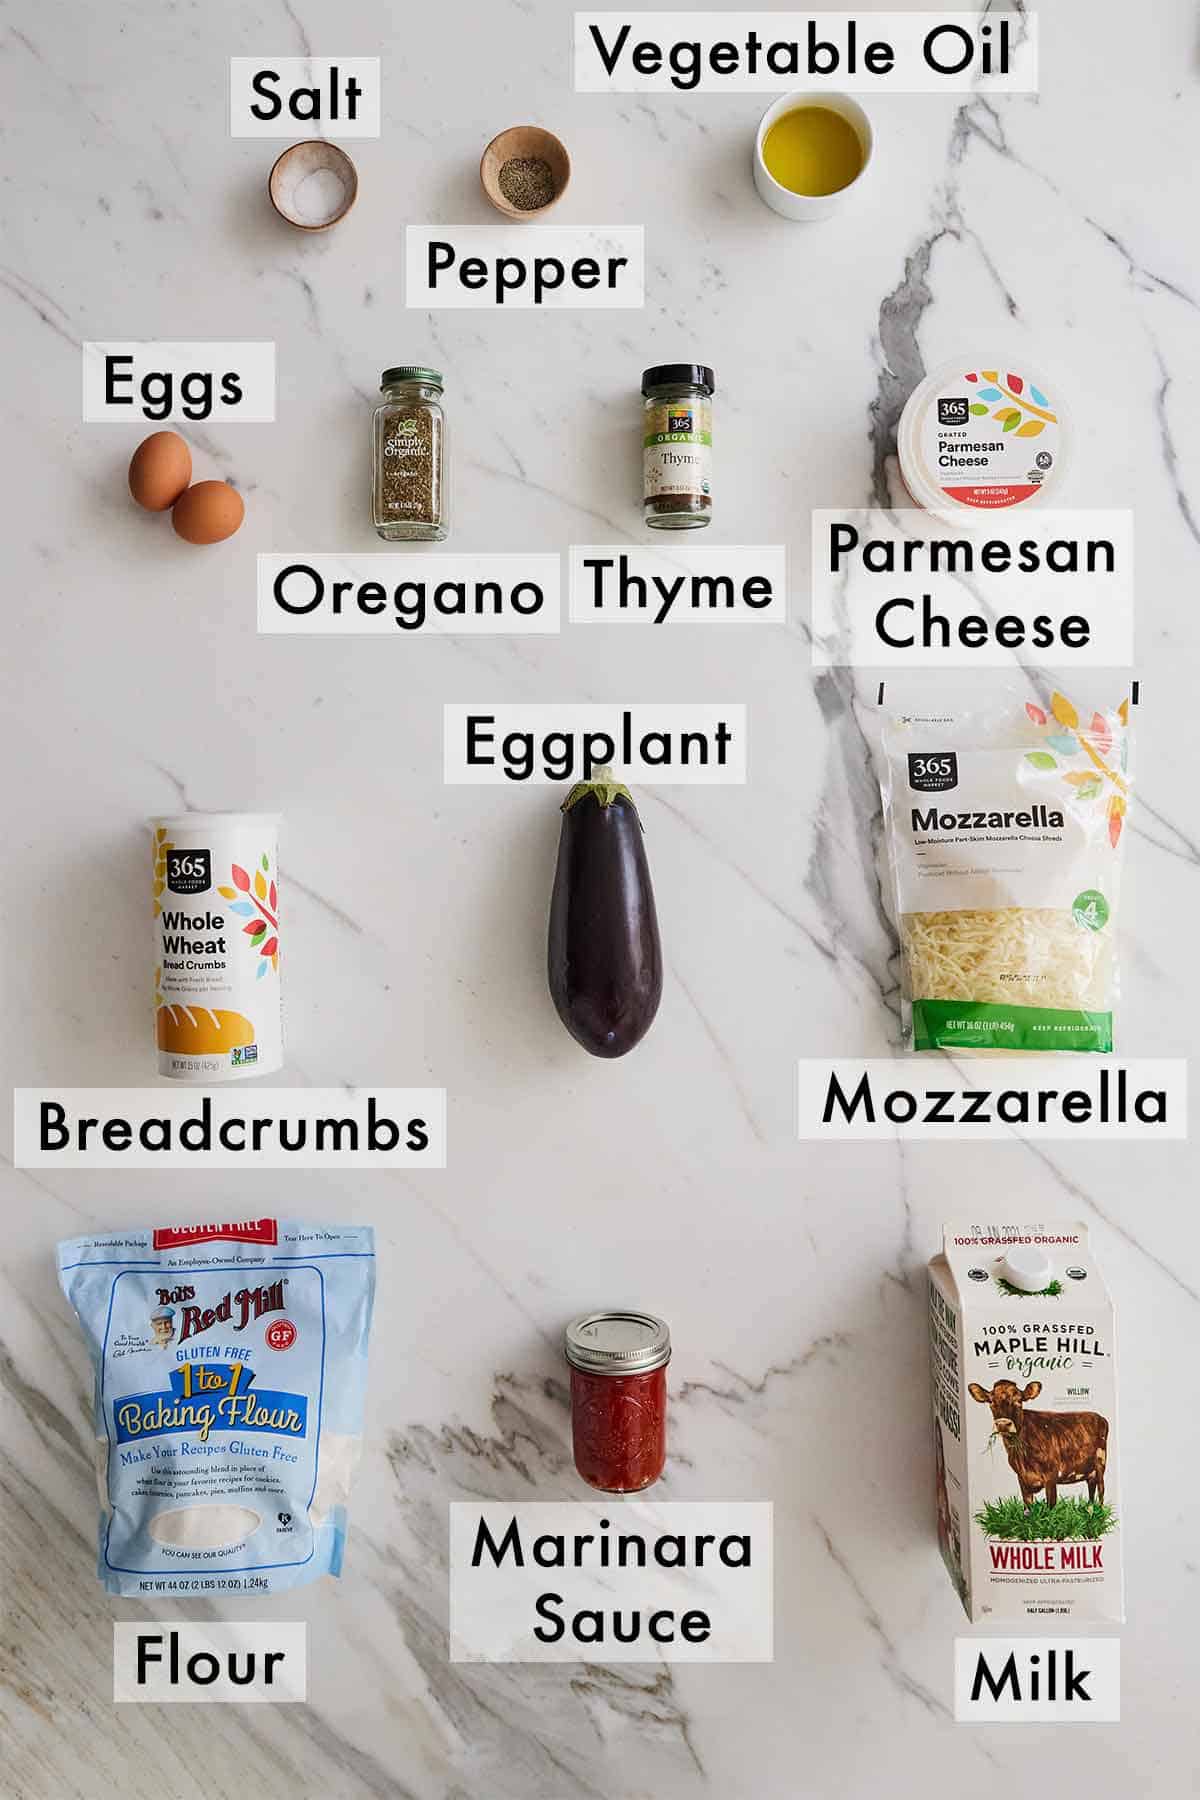 Ingredients needed to make eggplant parmesan.